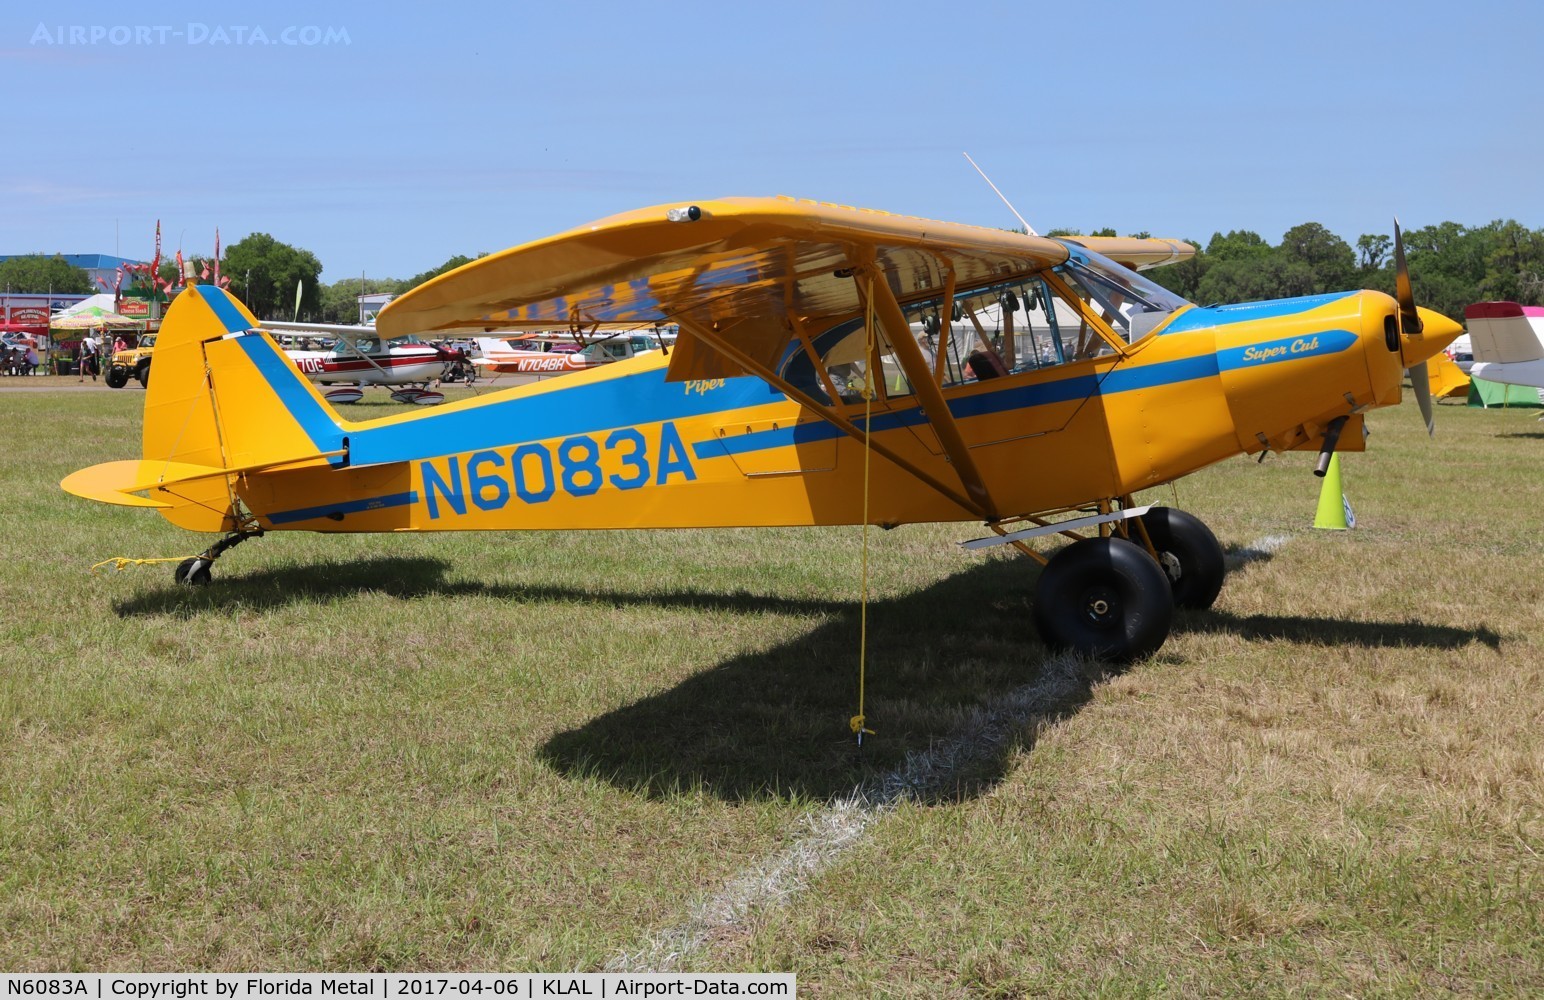 N6083A, 1979 Piper PA-18-150 Super Cub C/N 18-8009048, PA-18